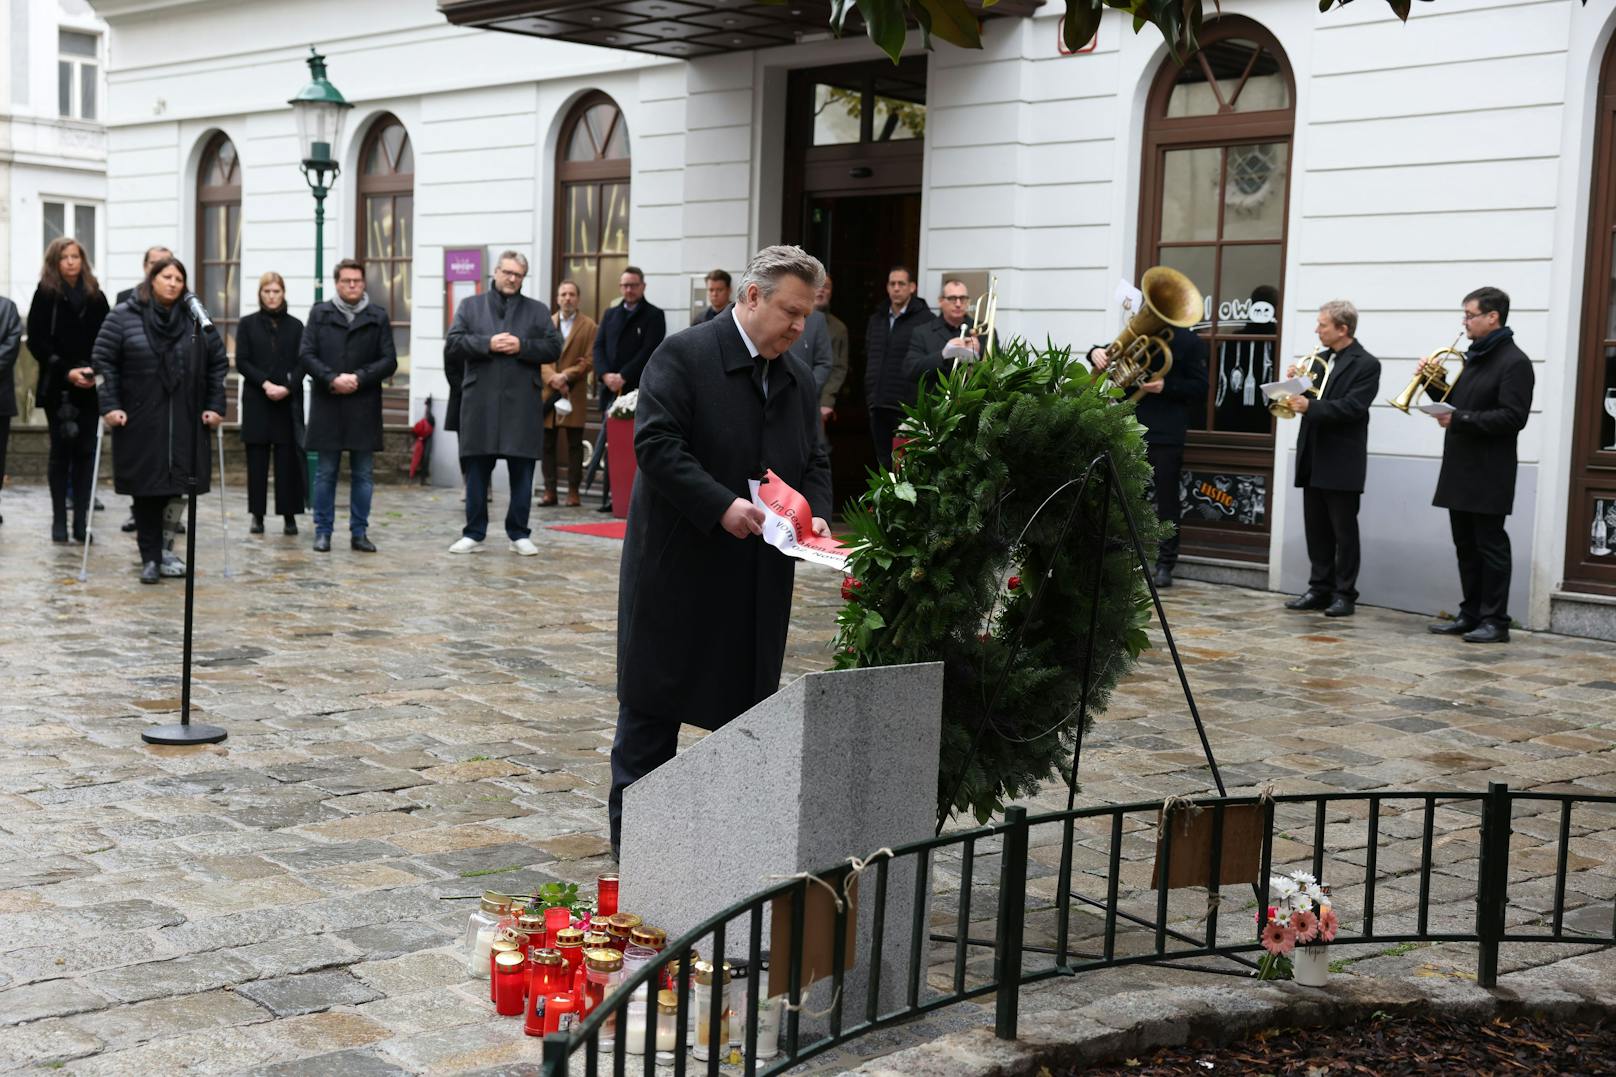 Am ersten Jahrestag des Terror-Anschlags in der Wiener Innenstadt am 2. November 2020 gedachten Hinterbliebene und die Wiener Stadtregierung  den Opfern. Stadtchef Michael Ludwig legte einen Kranz nieder.